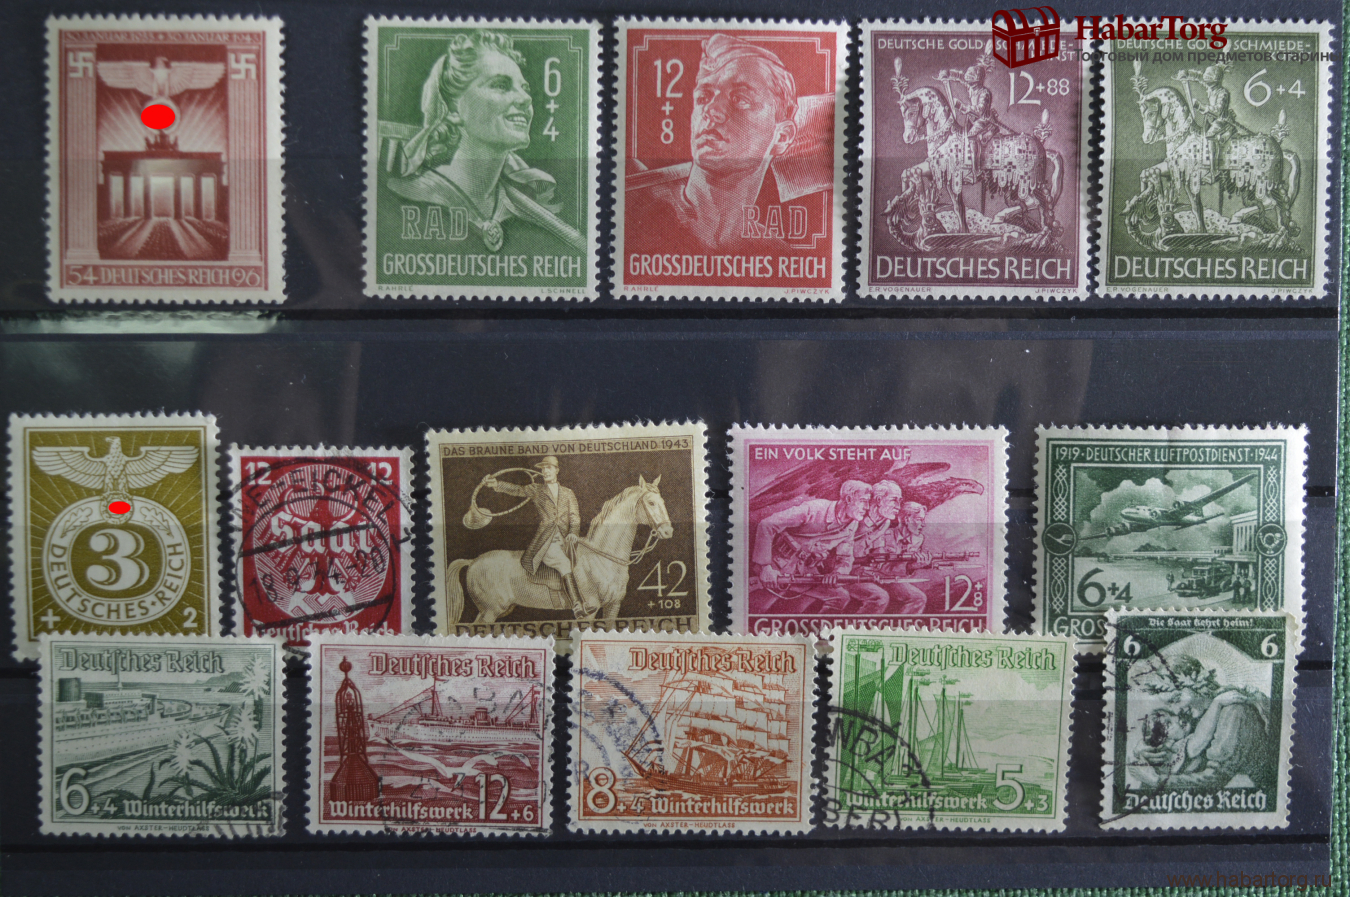 Купить марки германии. Марки почтовые 3й Рейх. Почтовые марки Германия Рейх. 3 Рейх марки 1908. Почтовые марки нацистской Германии.